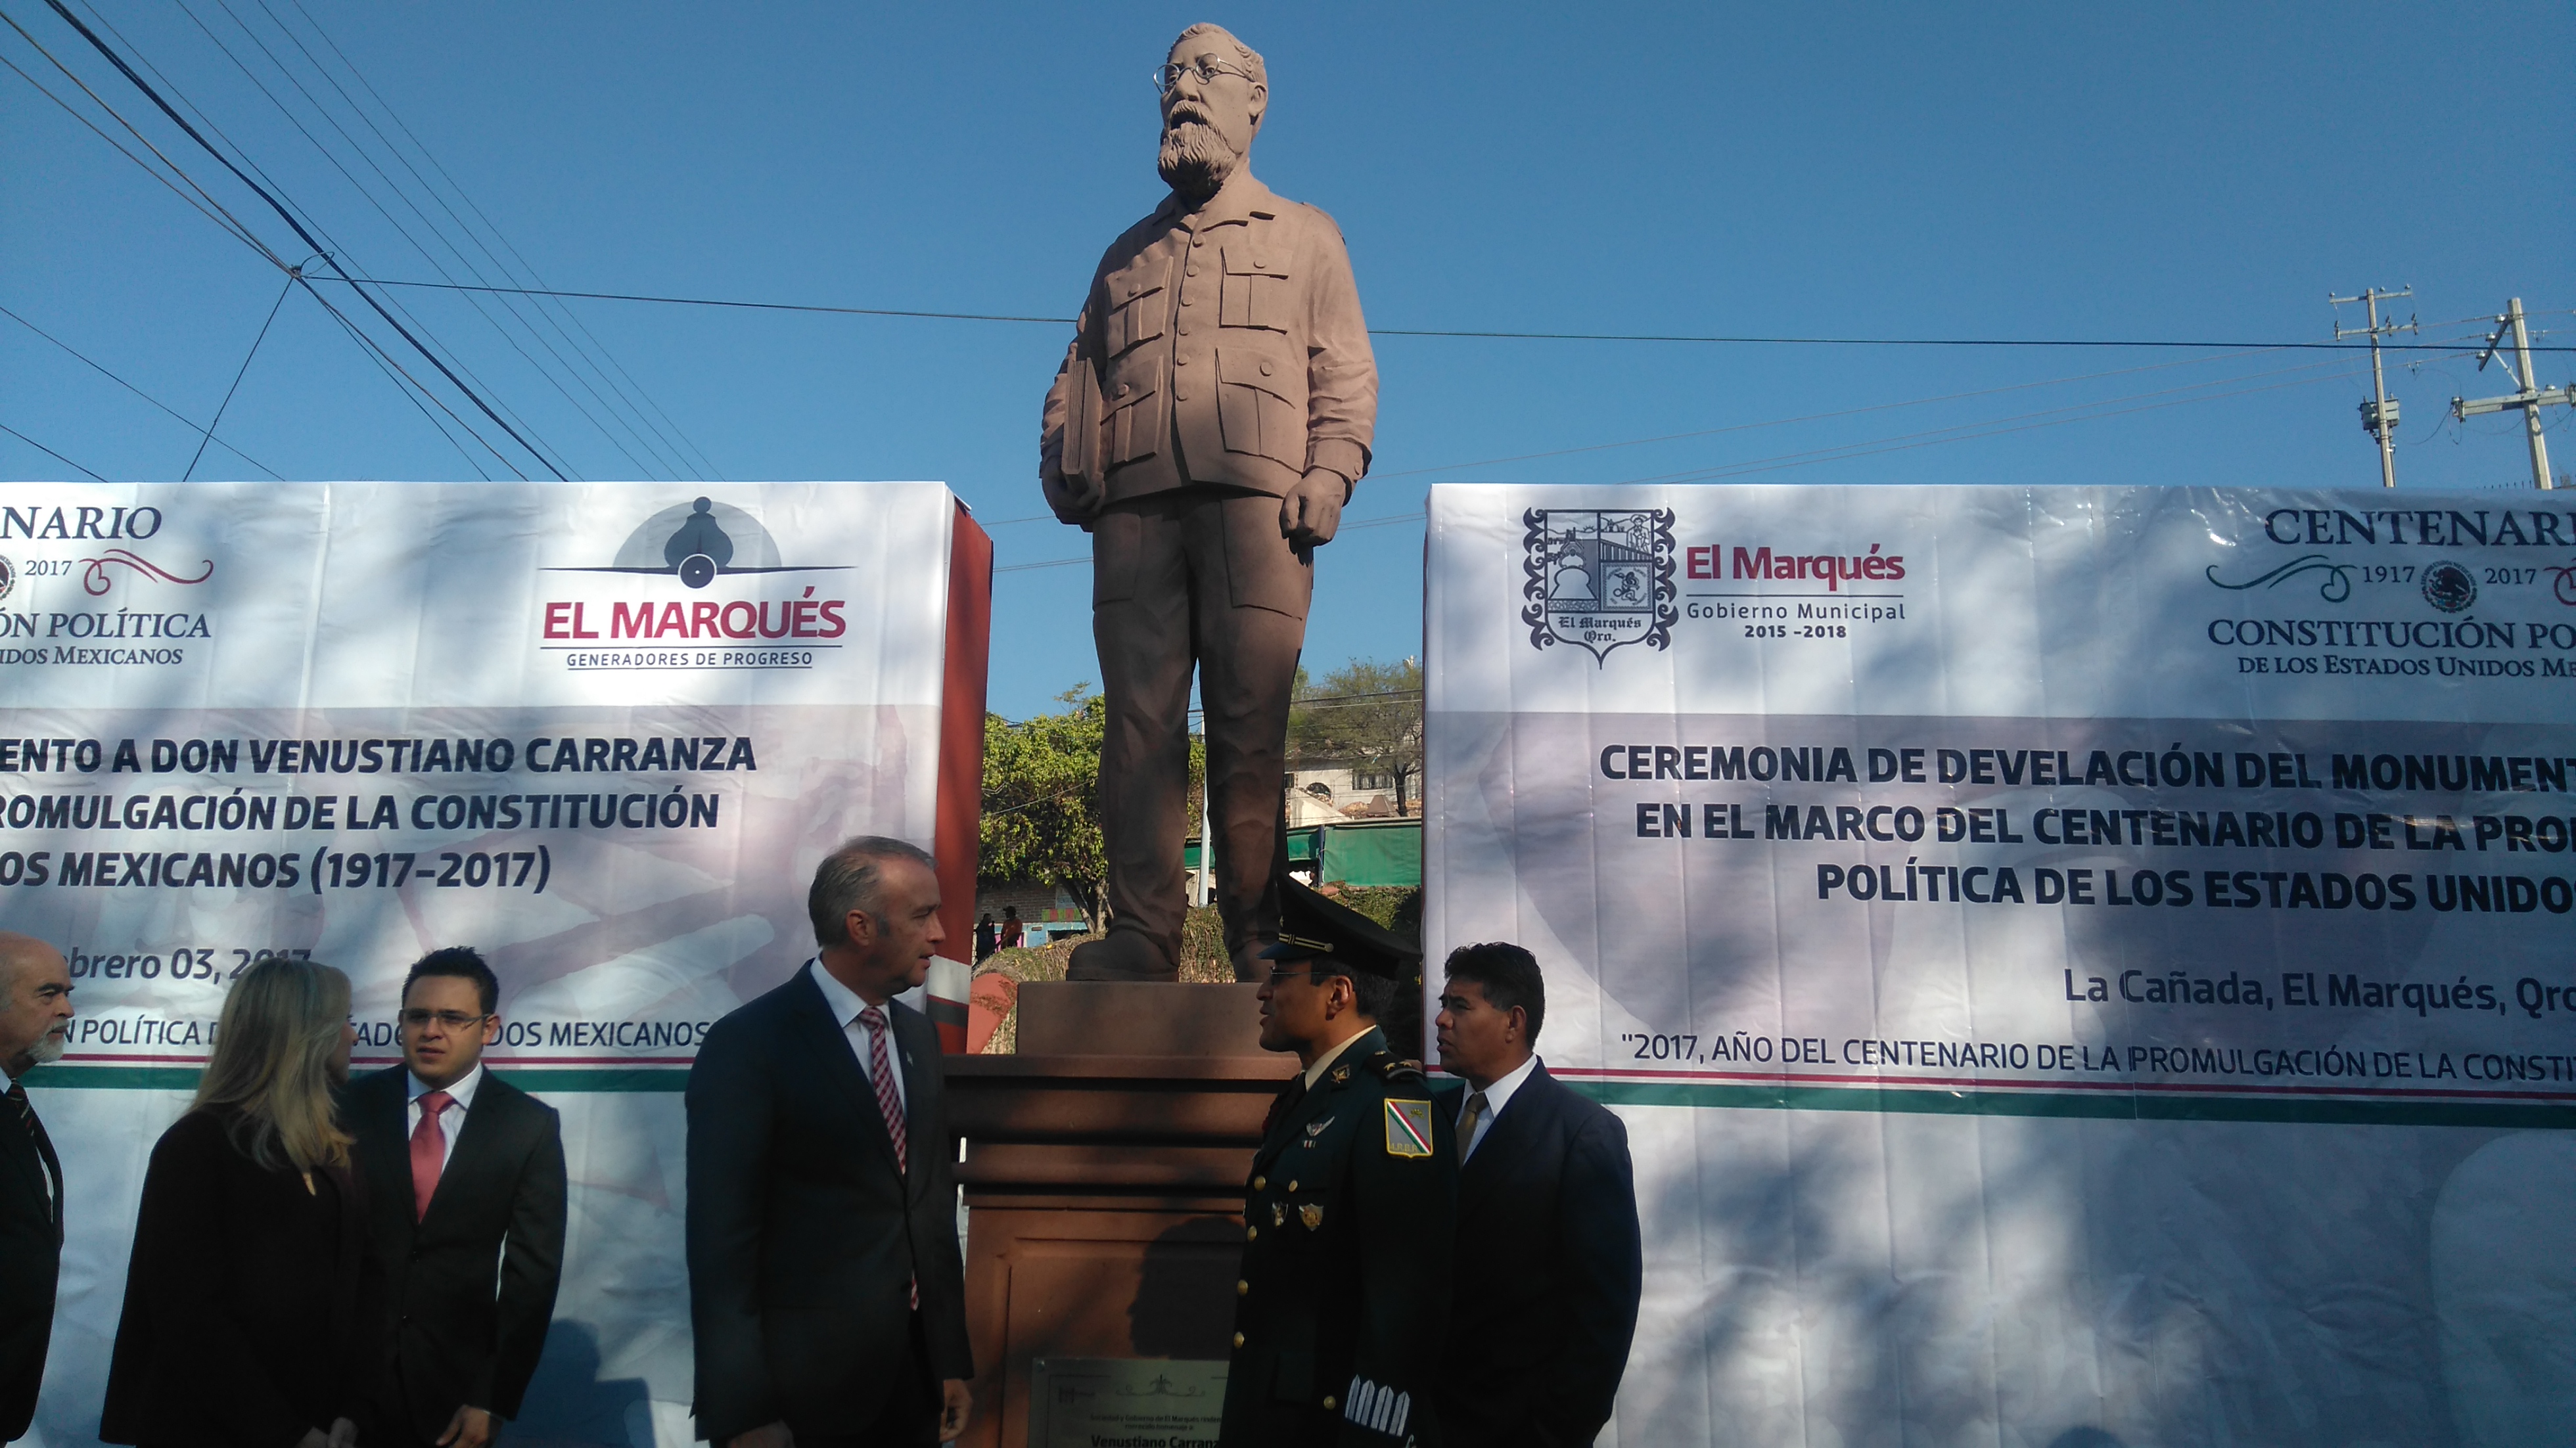  Por centenario de la Constitución, autoridades de El Marqués develan escultura de Venustiano Carranza